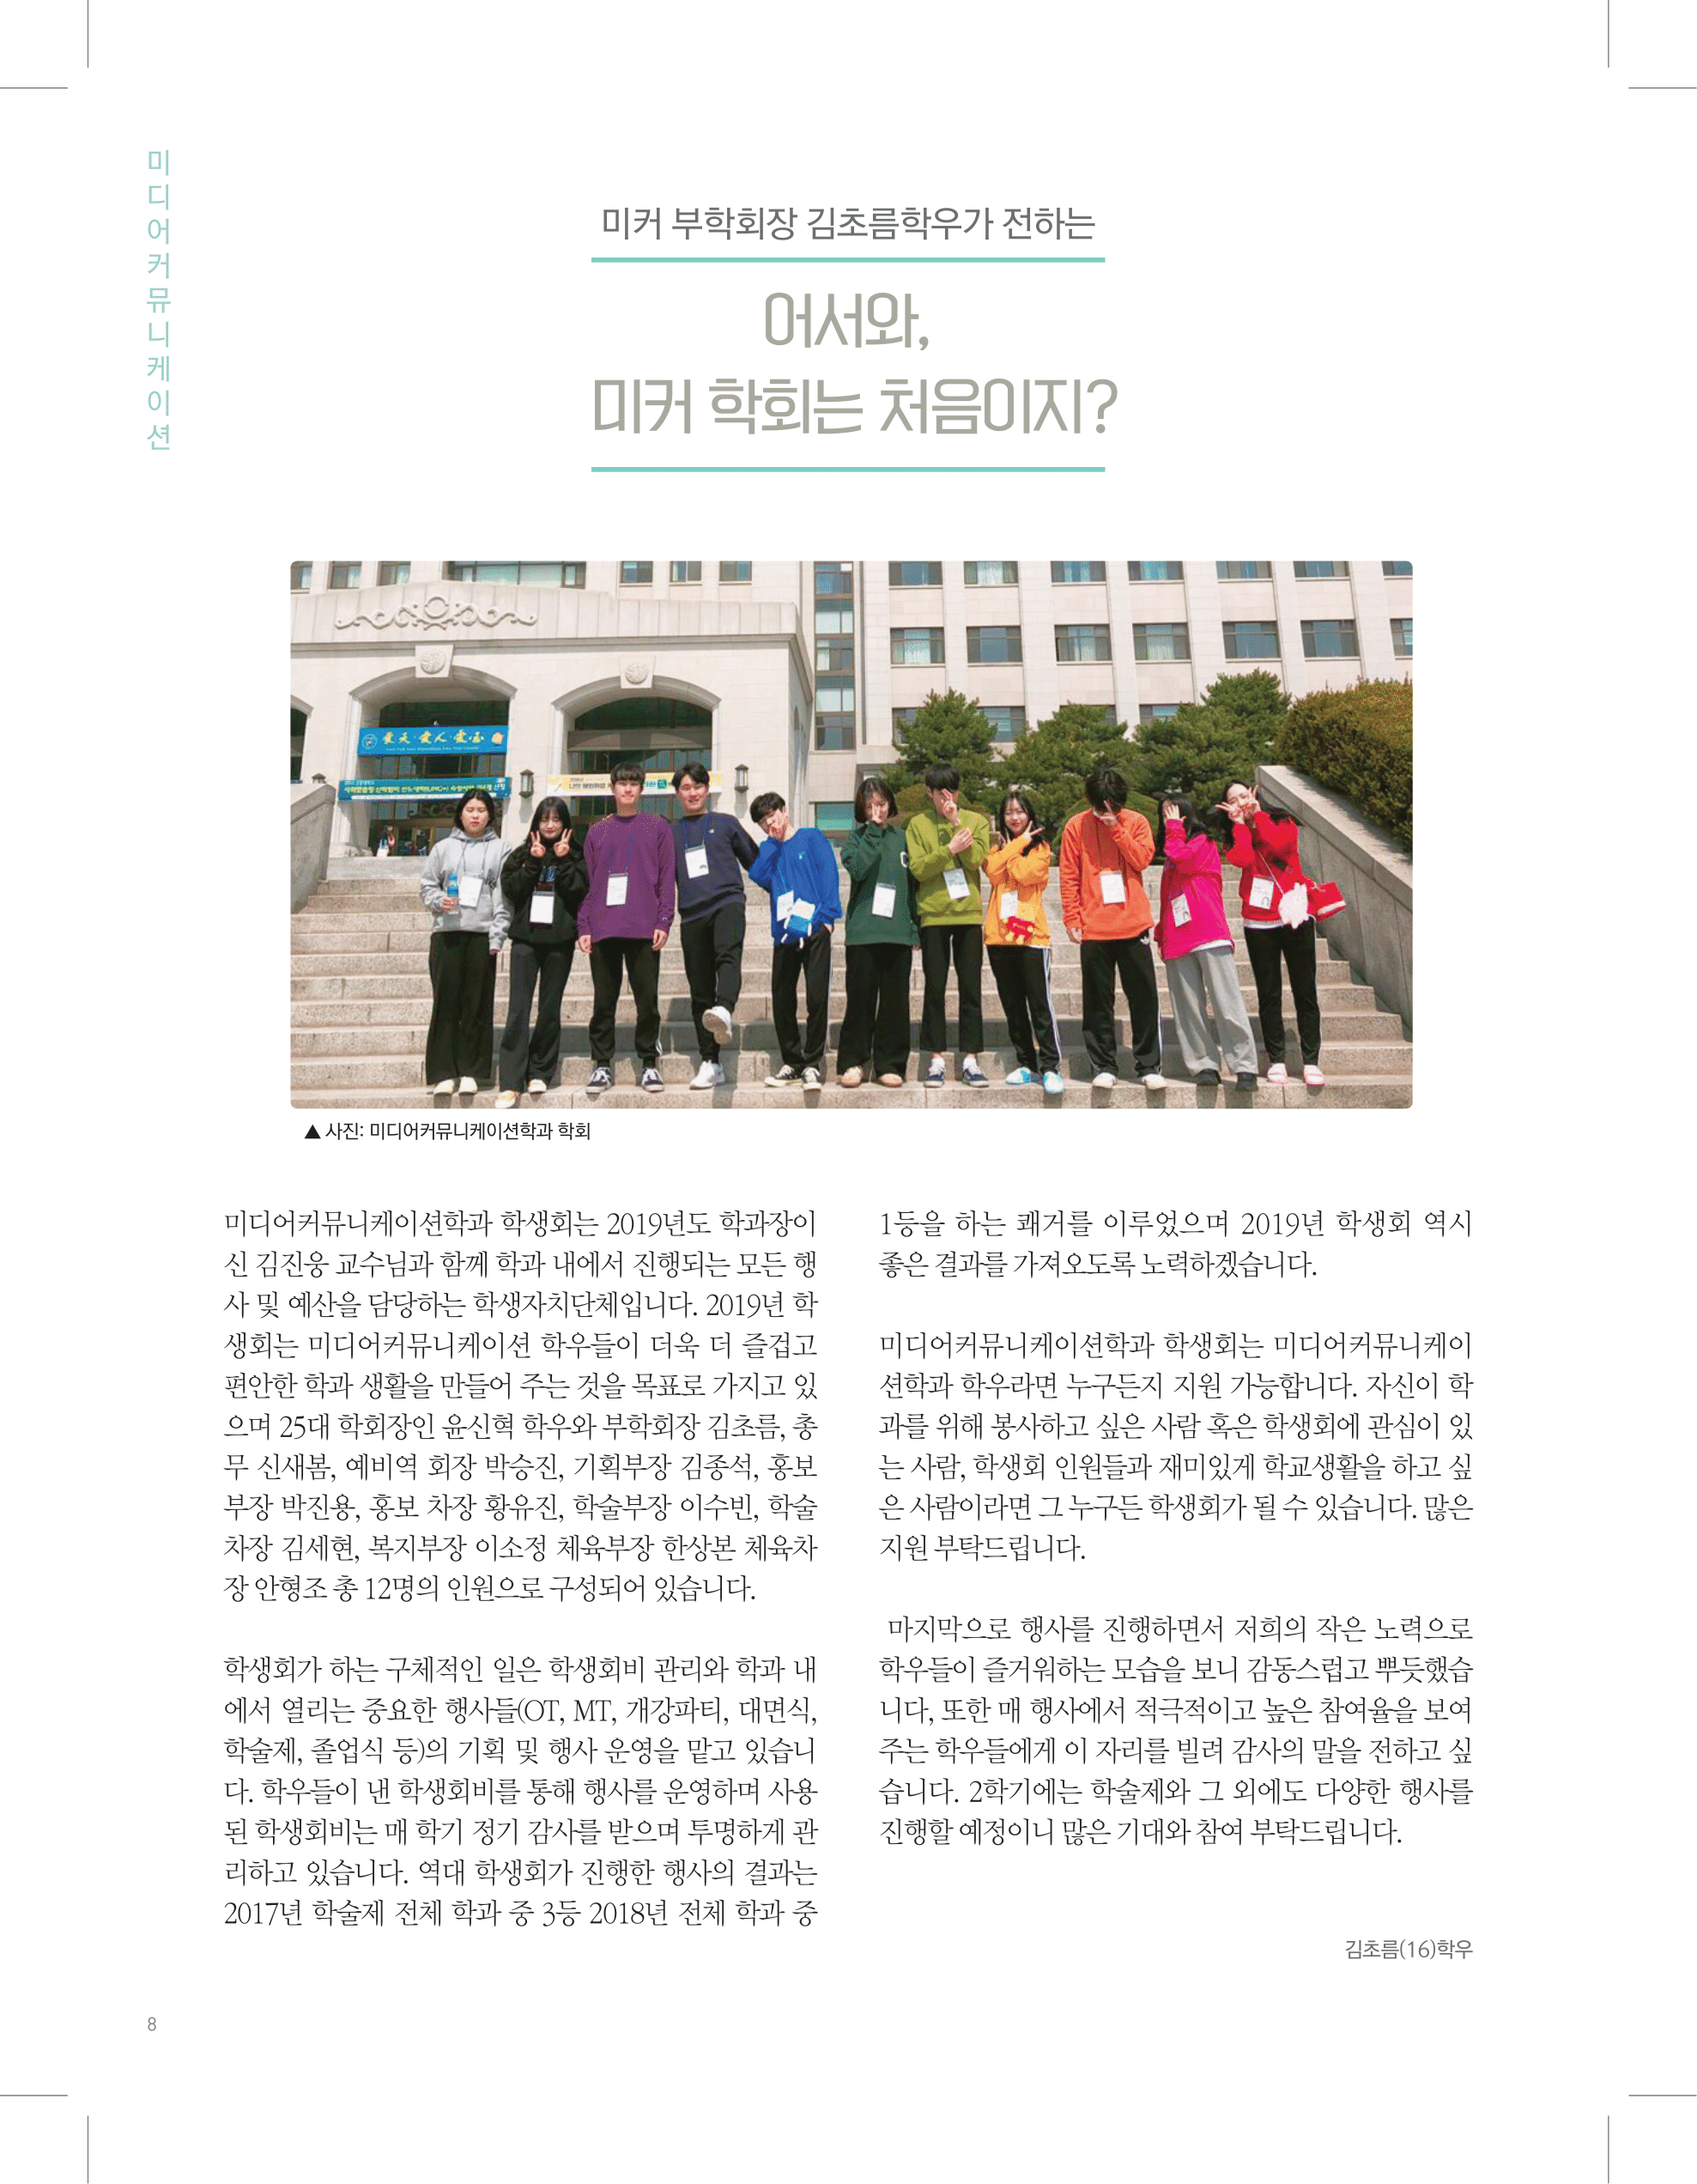 뜻새김 신문 73호 8